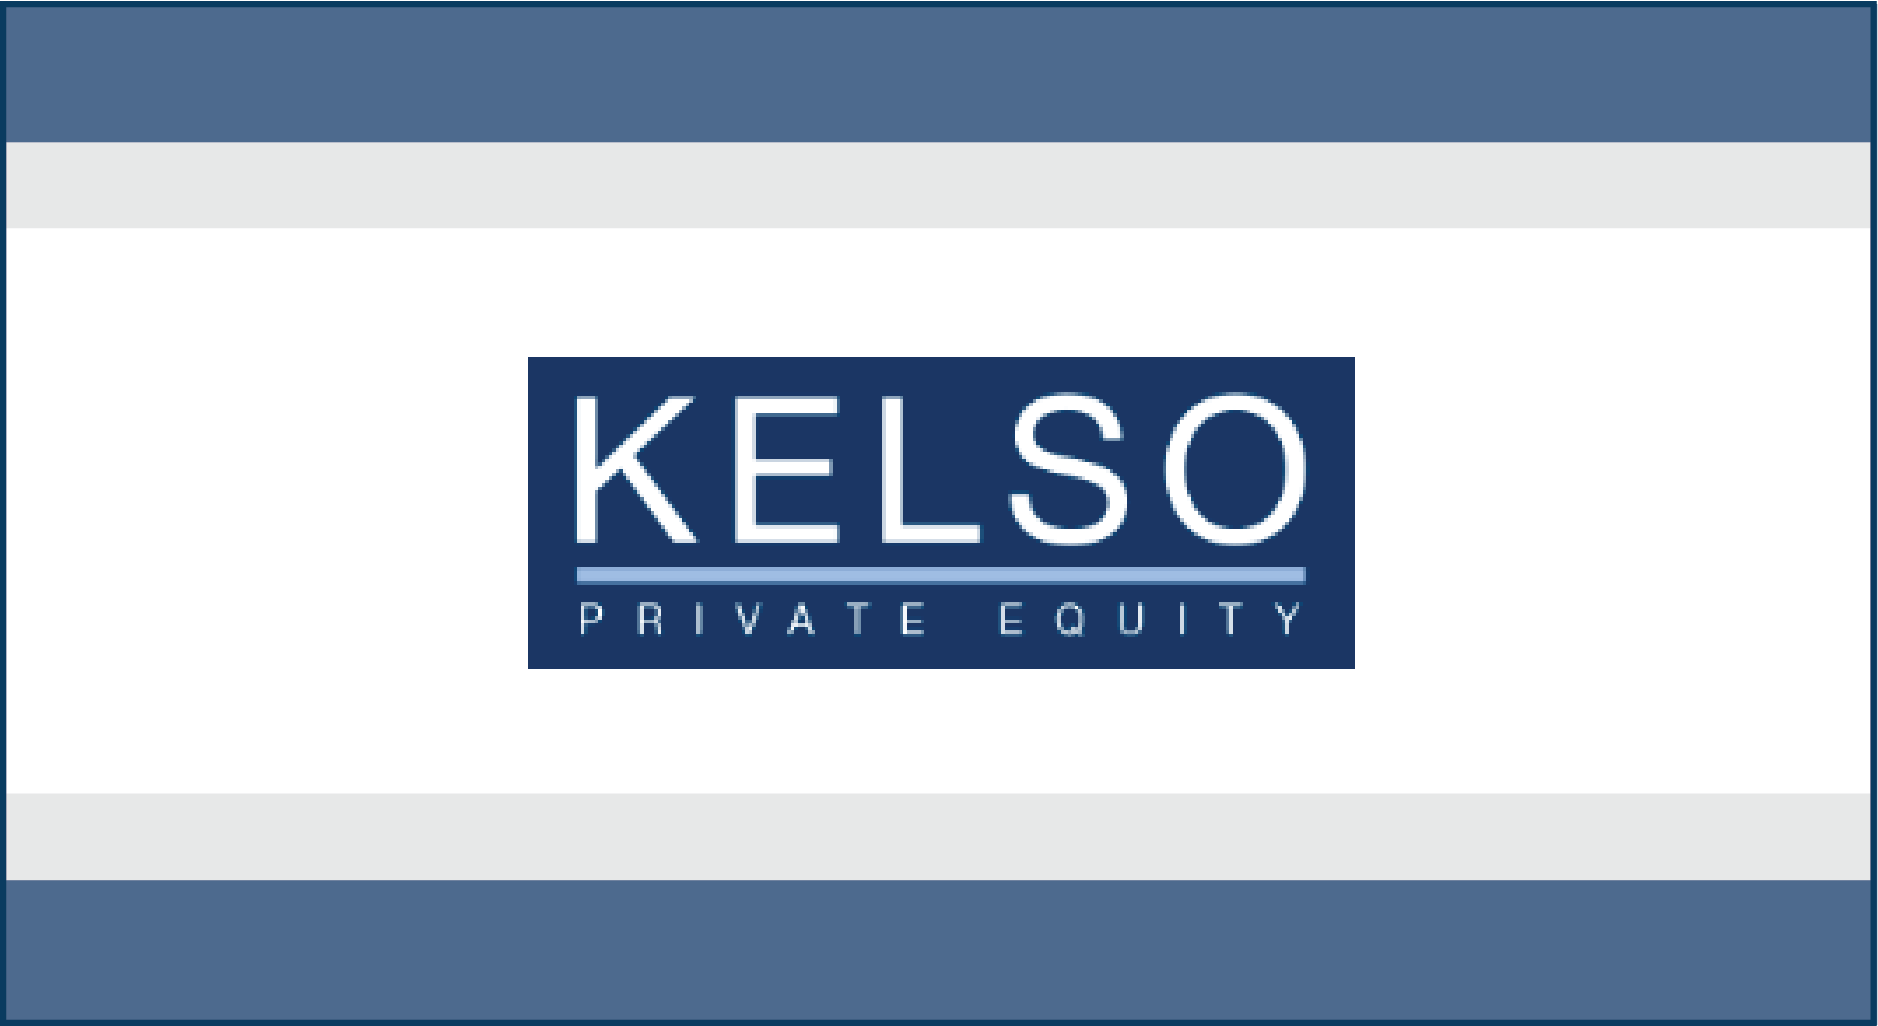 Kelso & Company adquiere interés mayoritario en J.S. Held